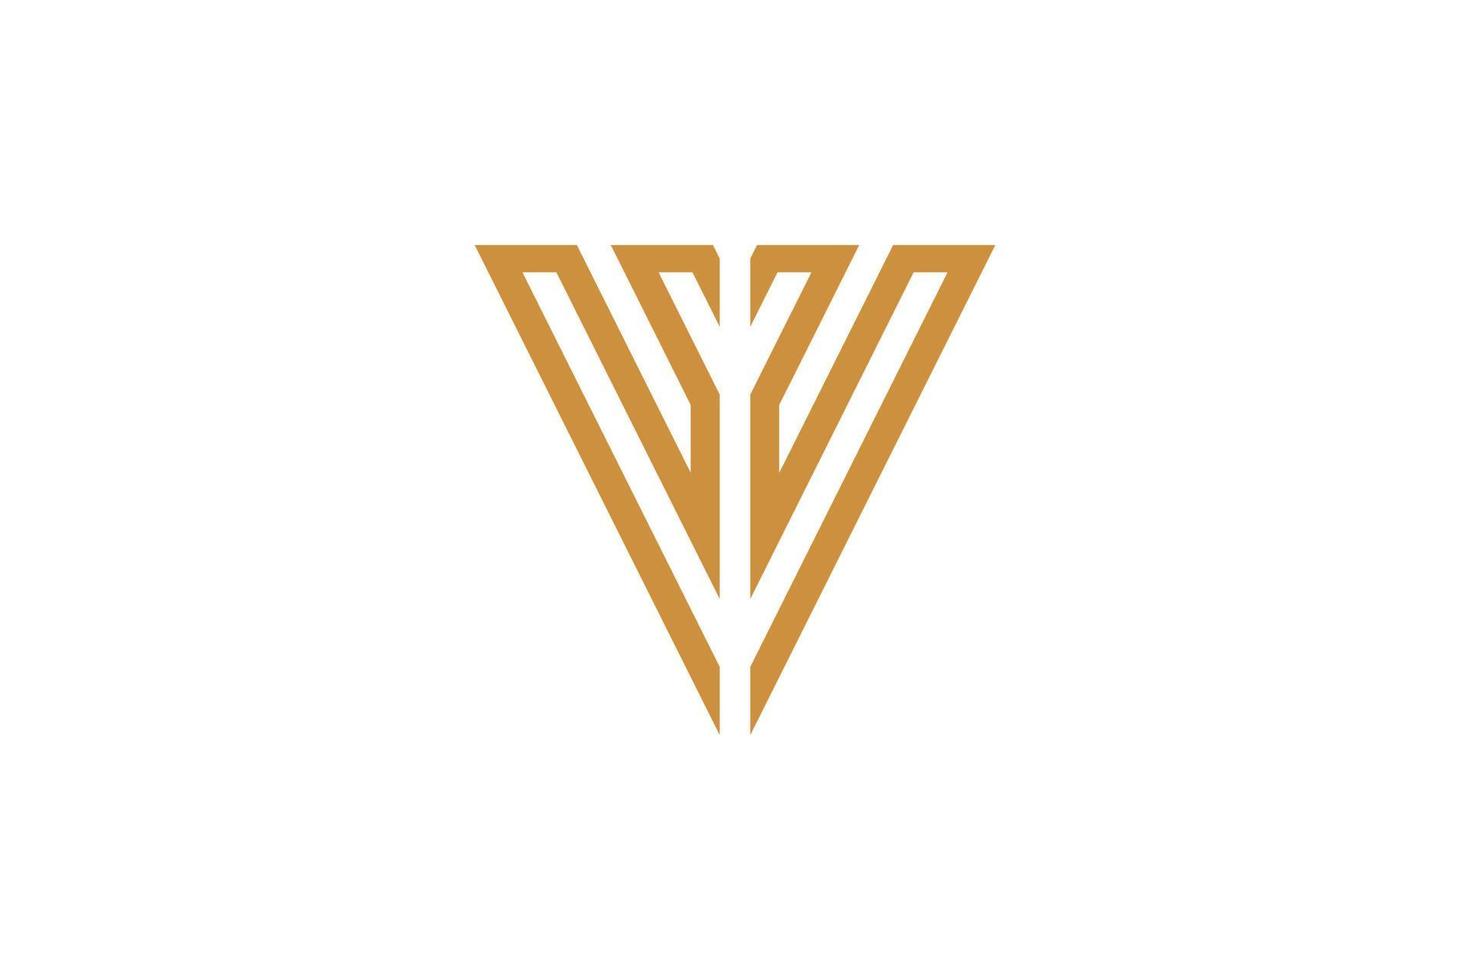 le logo monoline v vecteur